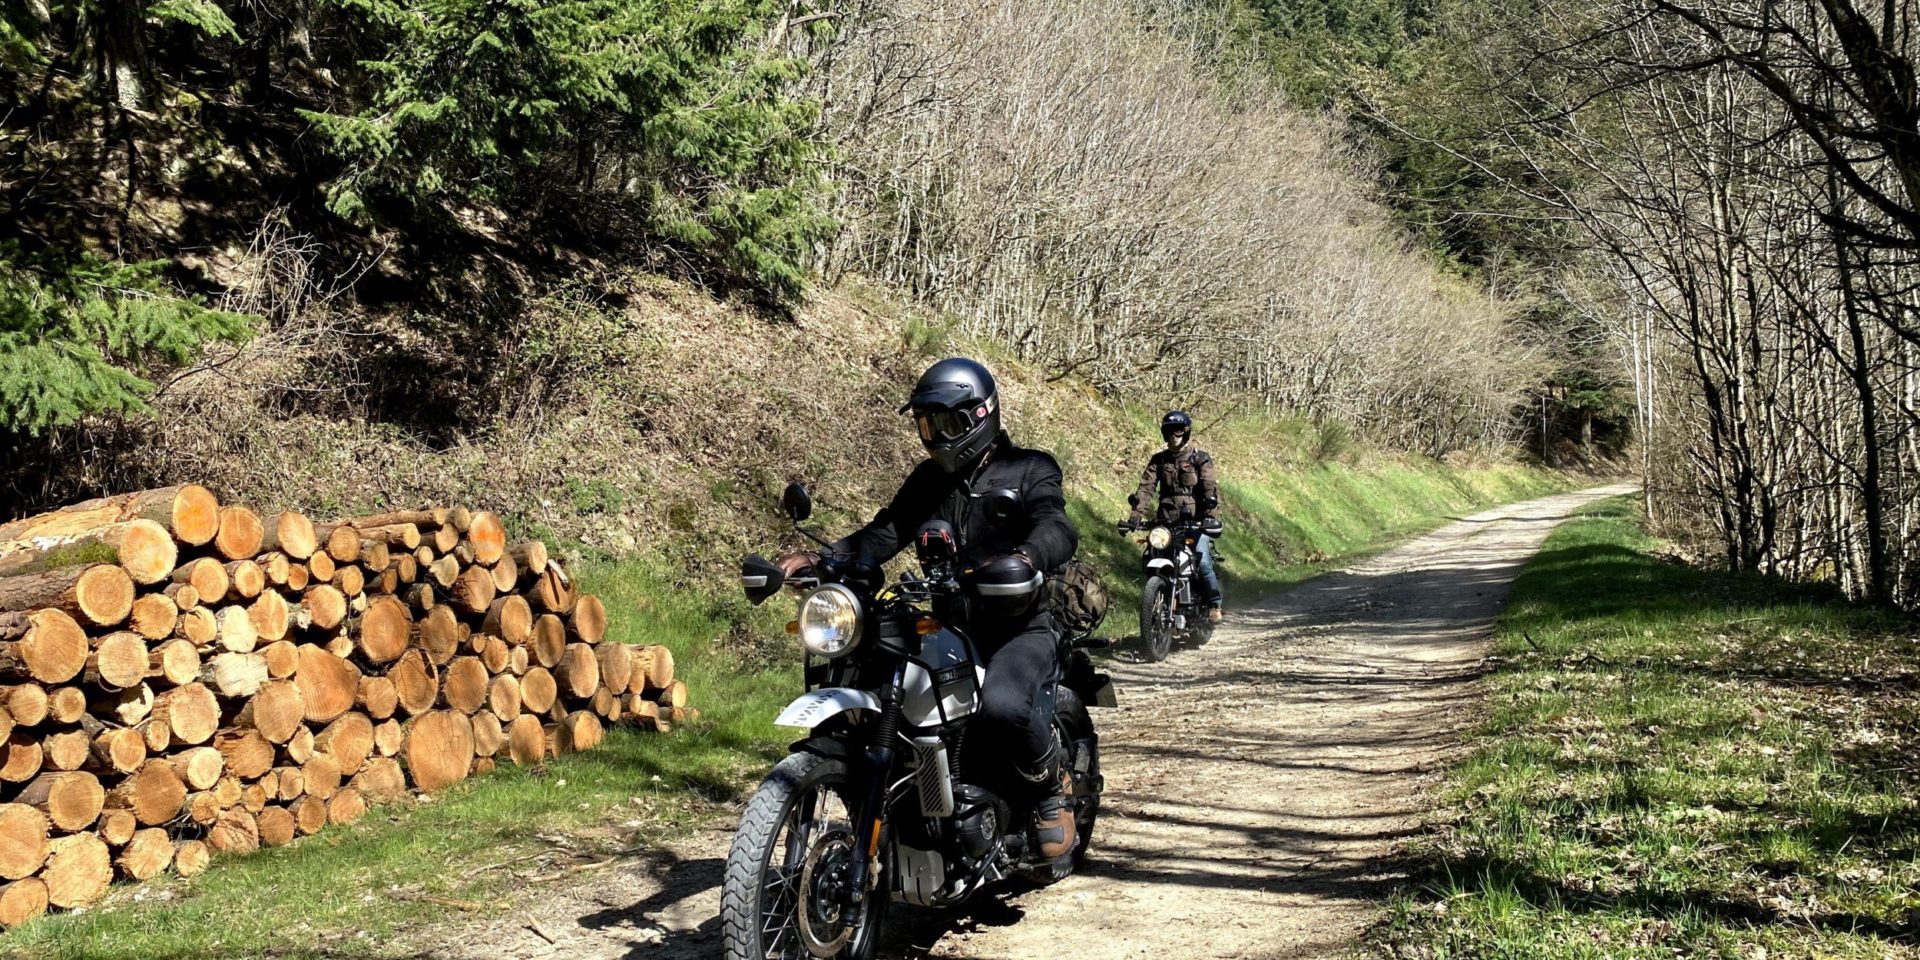 Road trip moto France - Stage tout-terrain 3 jours